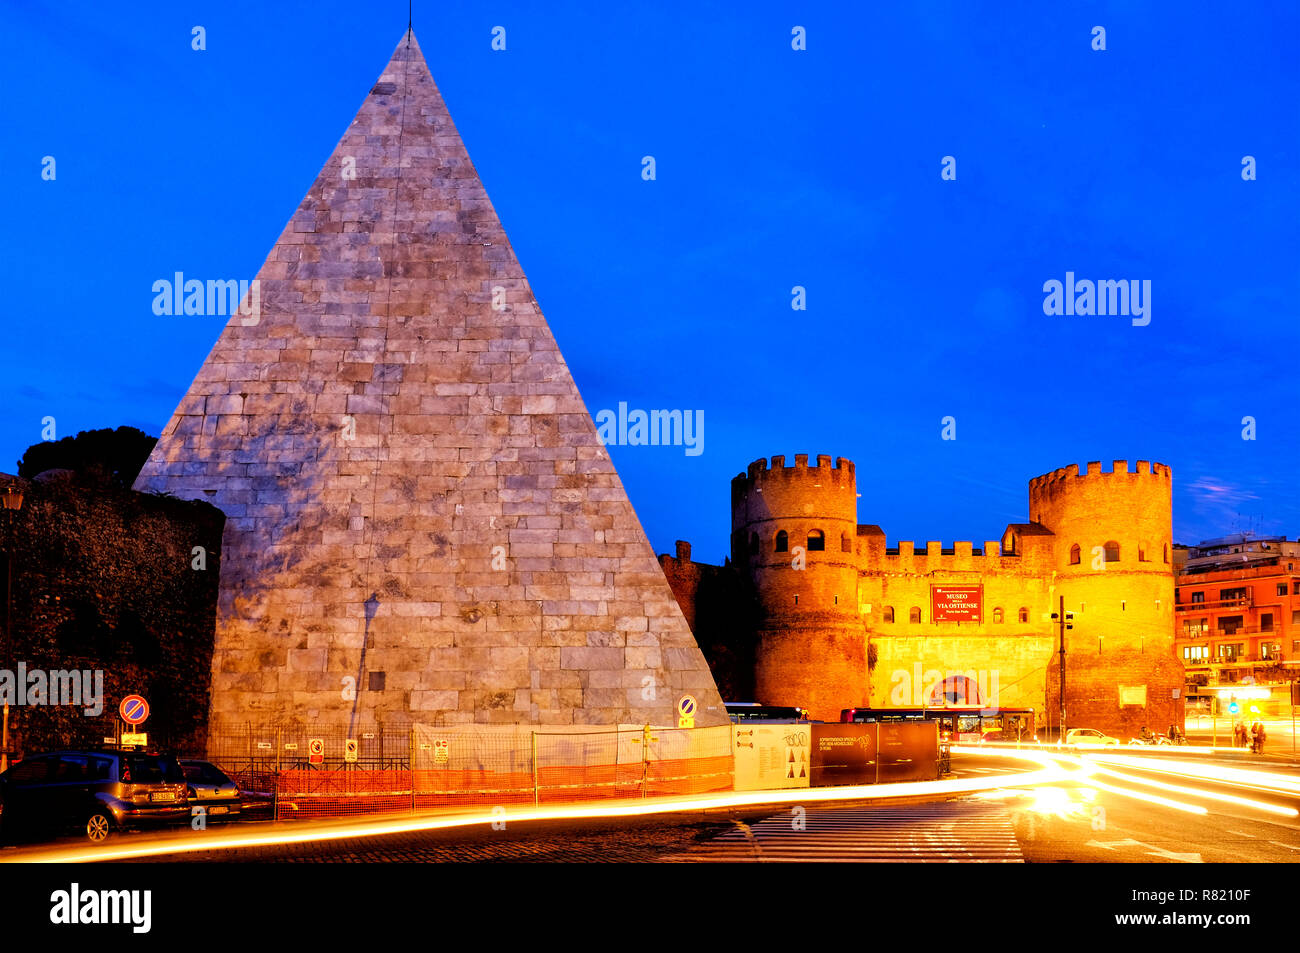 Pyramide de Cestius et Porta San Paolo, Rome Italie Banque D'Images